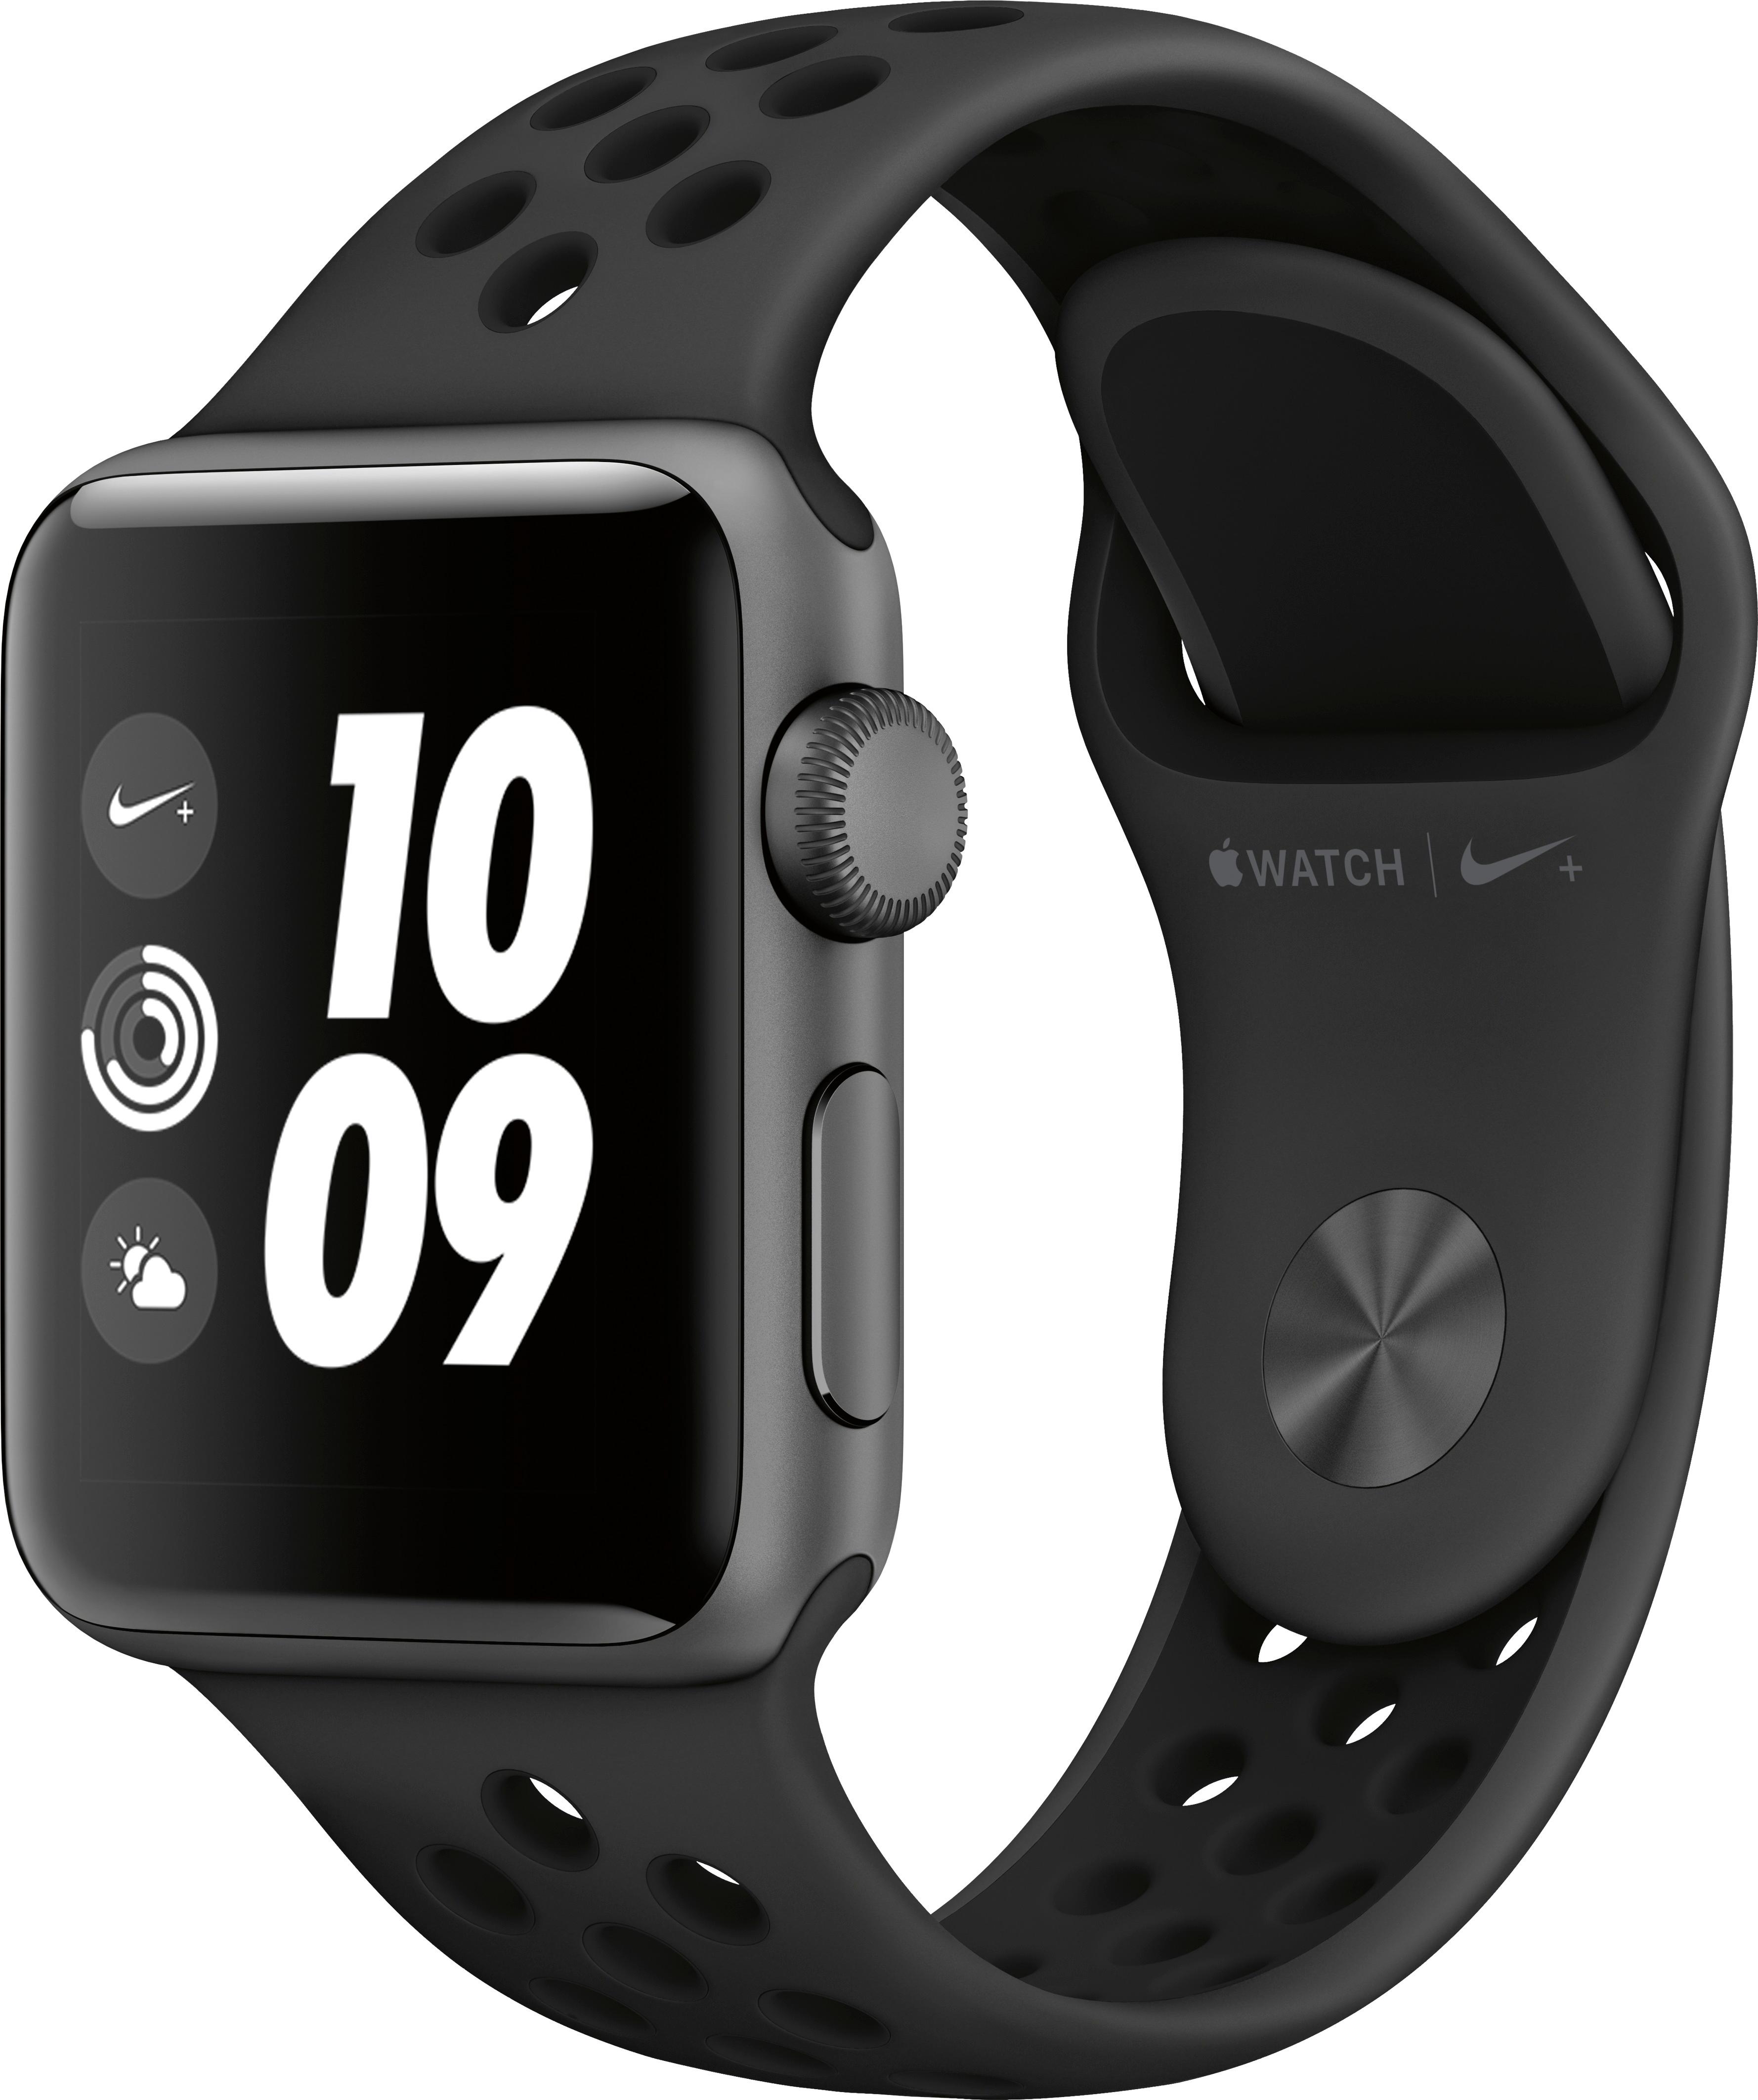 Best Buy: Geek Squad Certified Refurbished Apple Watch Nike+